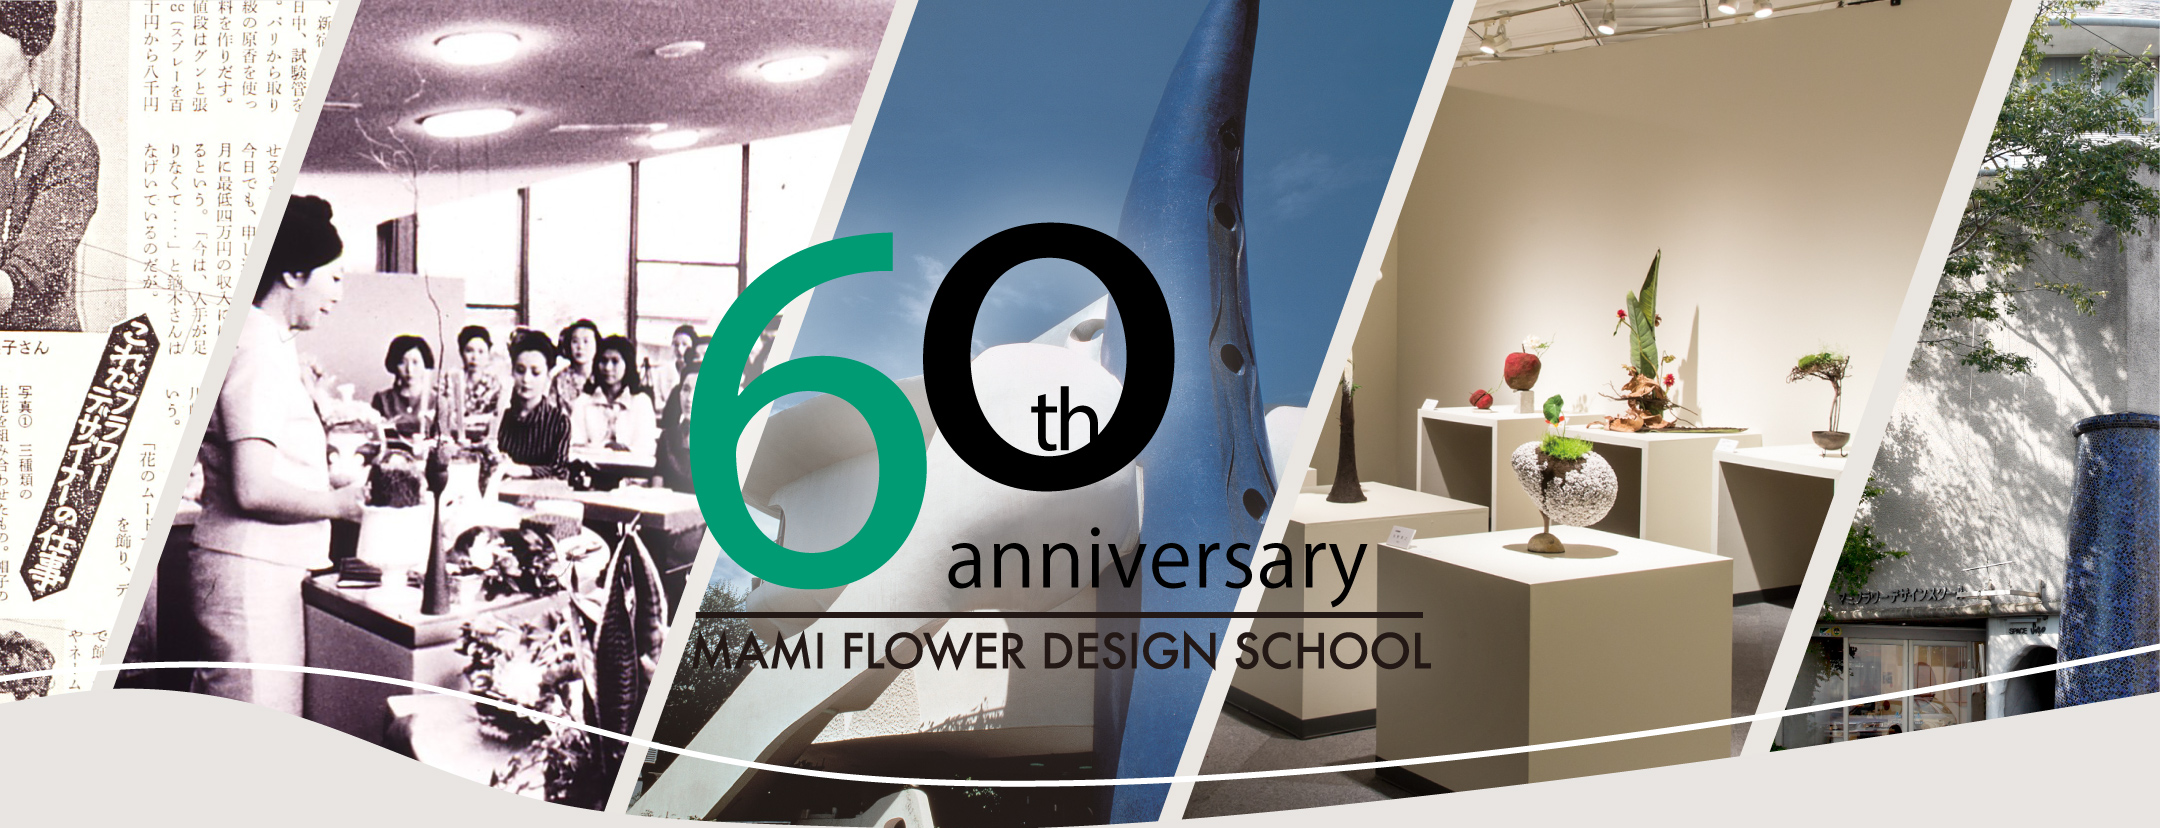 マミフラワーデザイン60周年記念ページ